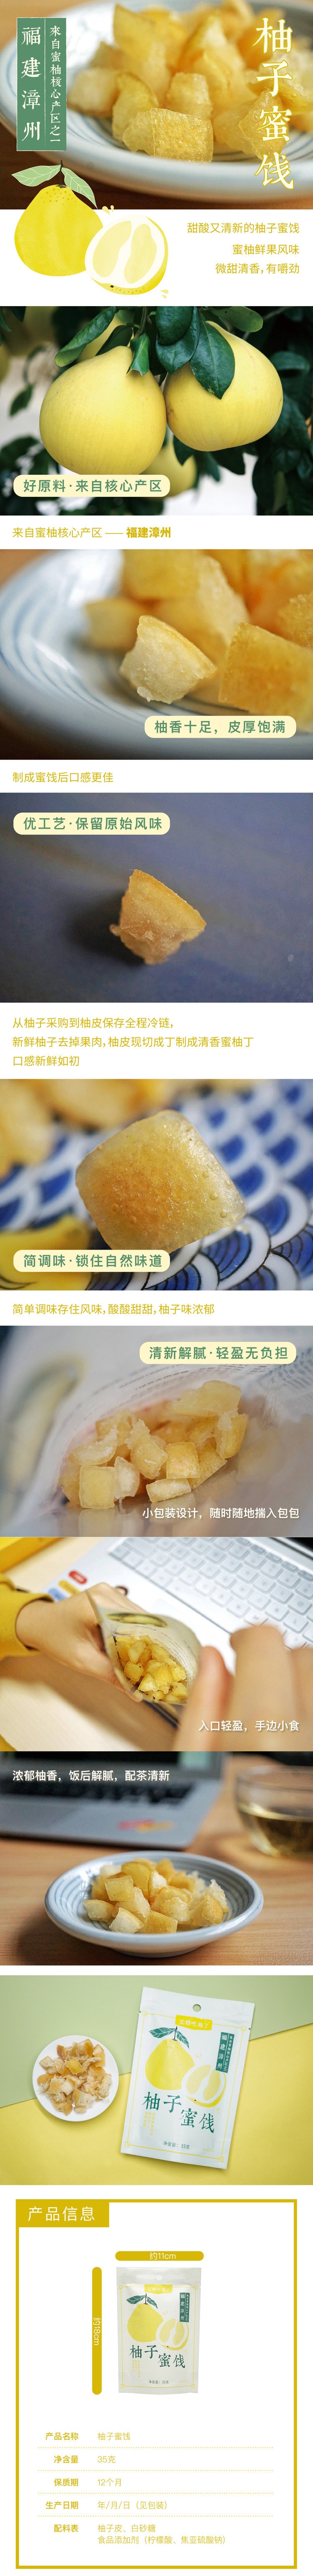 【中国直邮】艾格吃饱了 柚子蜜饯 35g